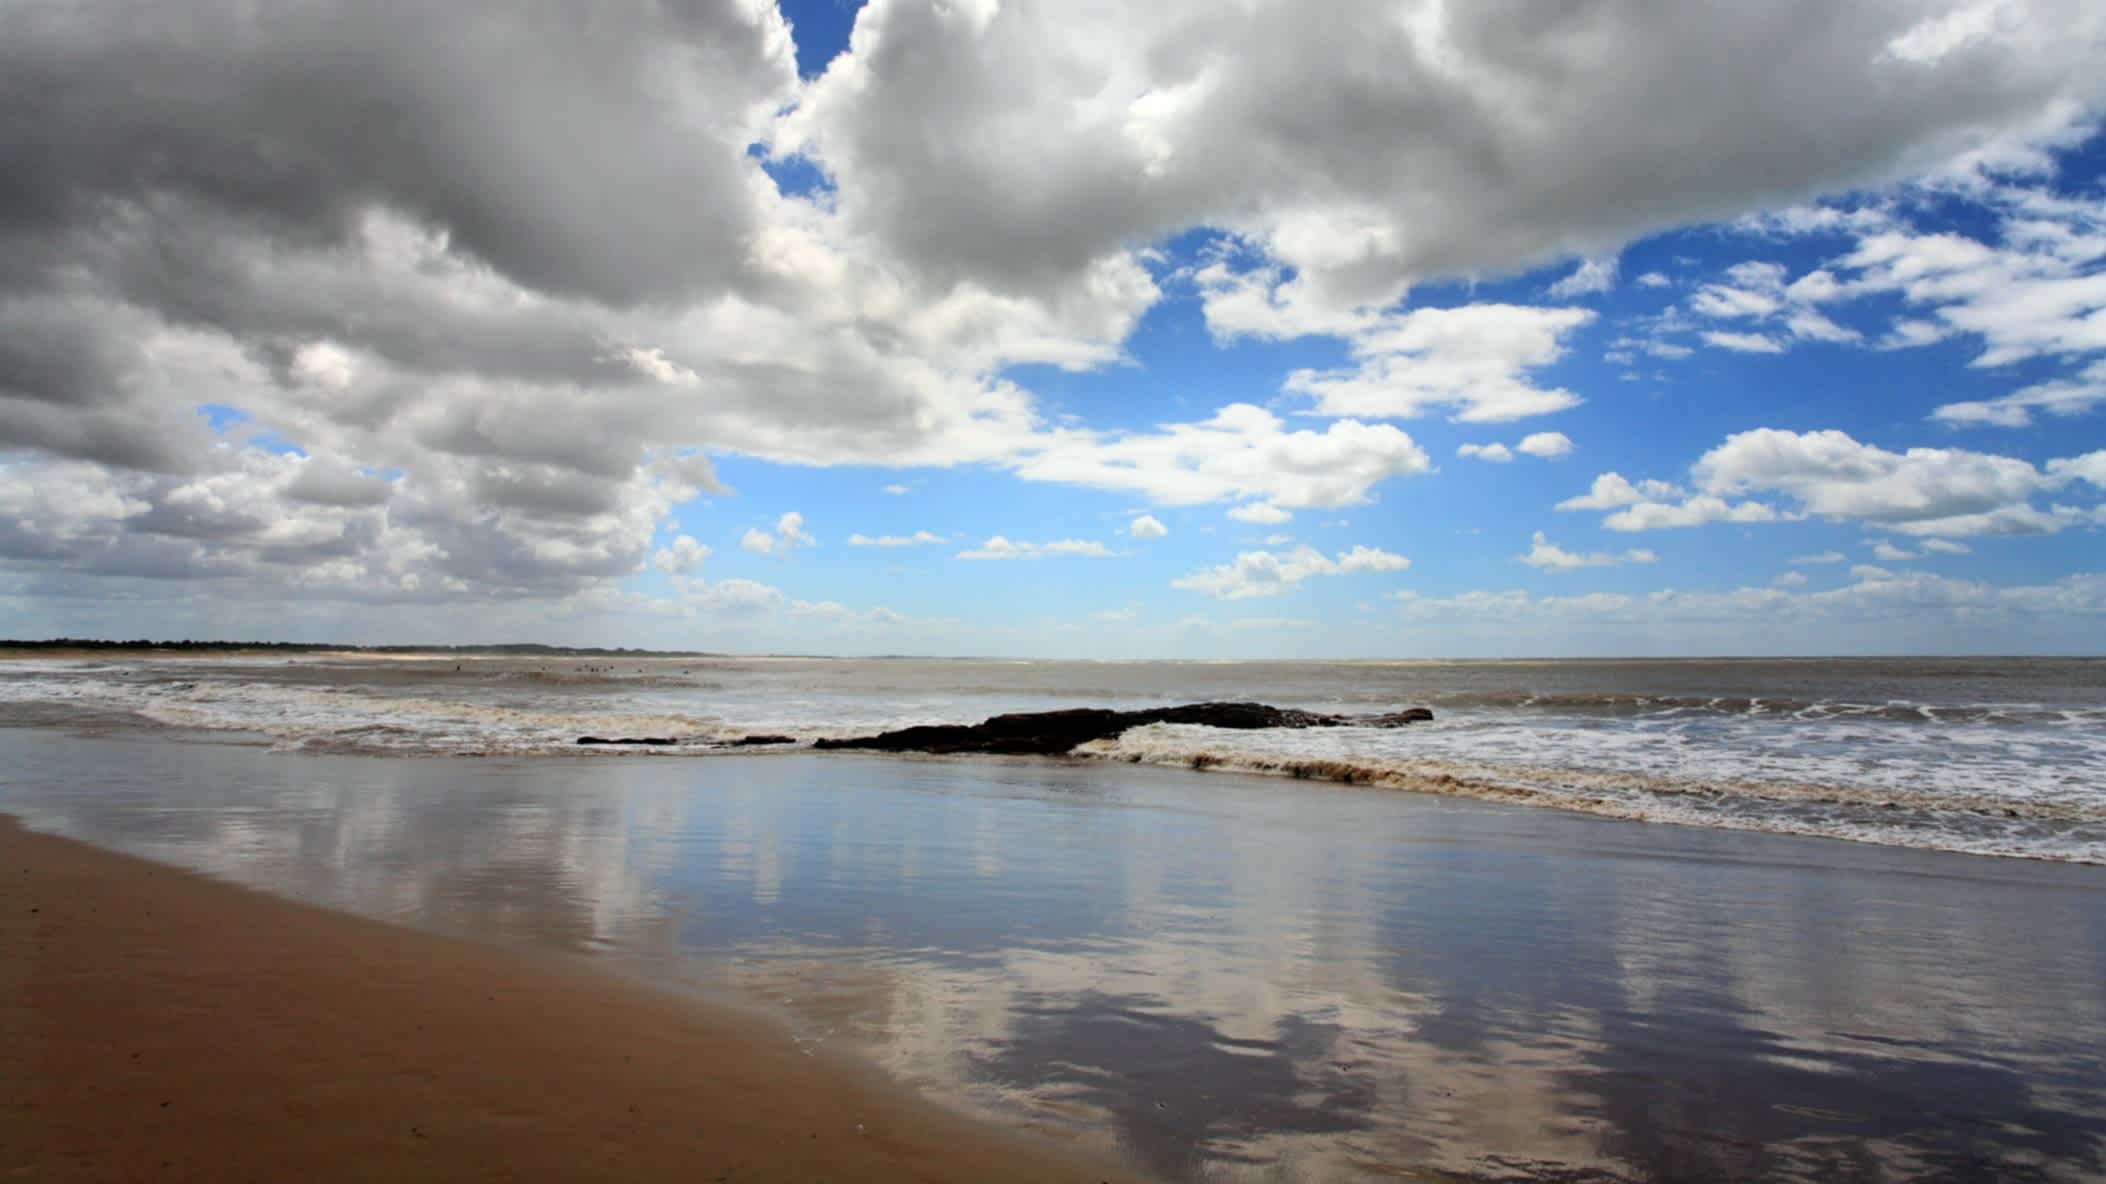 Vue de la mer sur le sable par temps nuageux, sur la plage de Los Titanes, en Uruguay.
